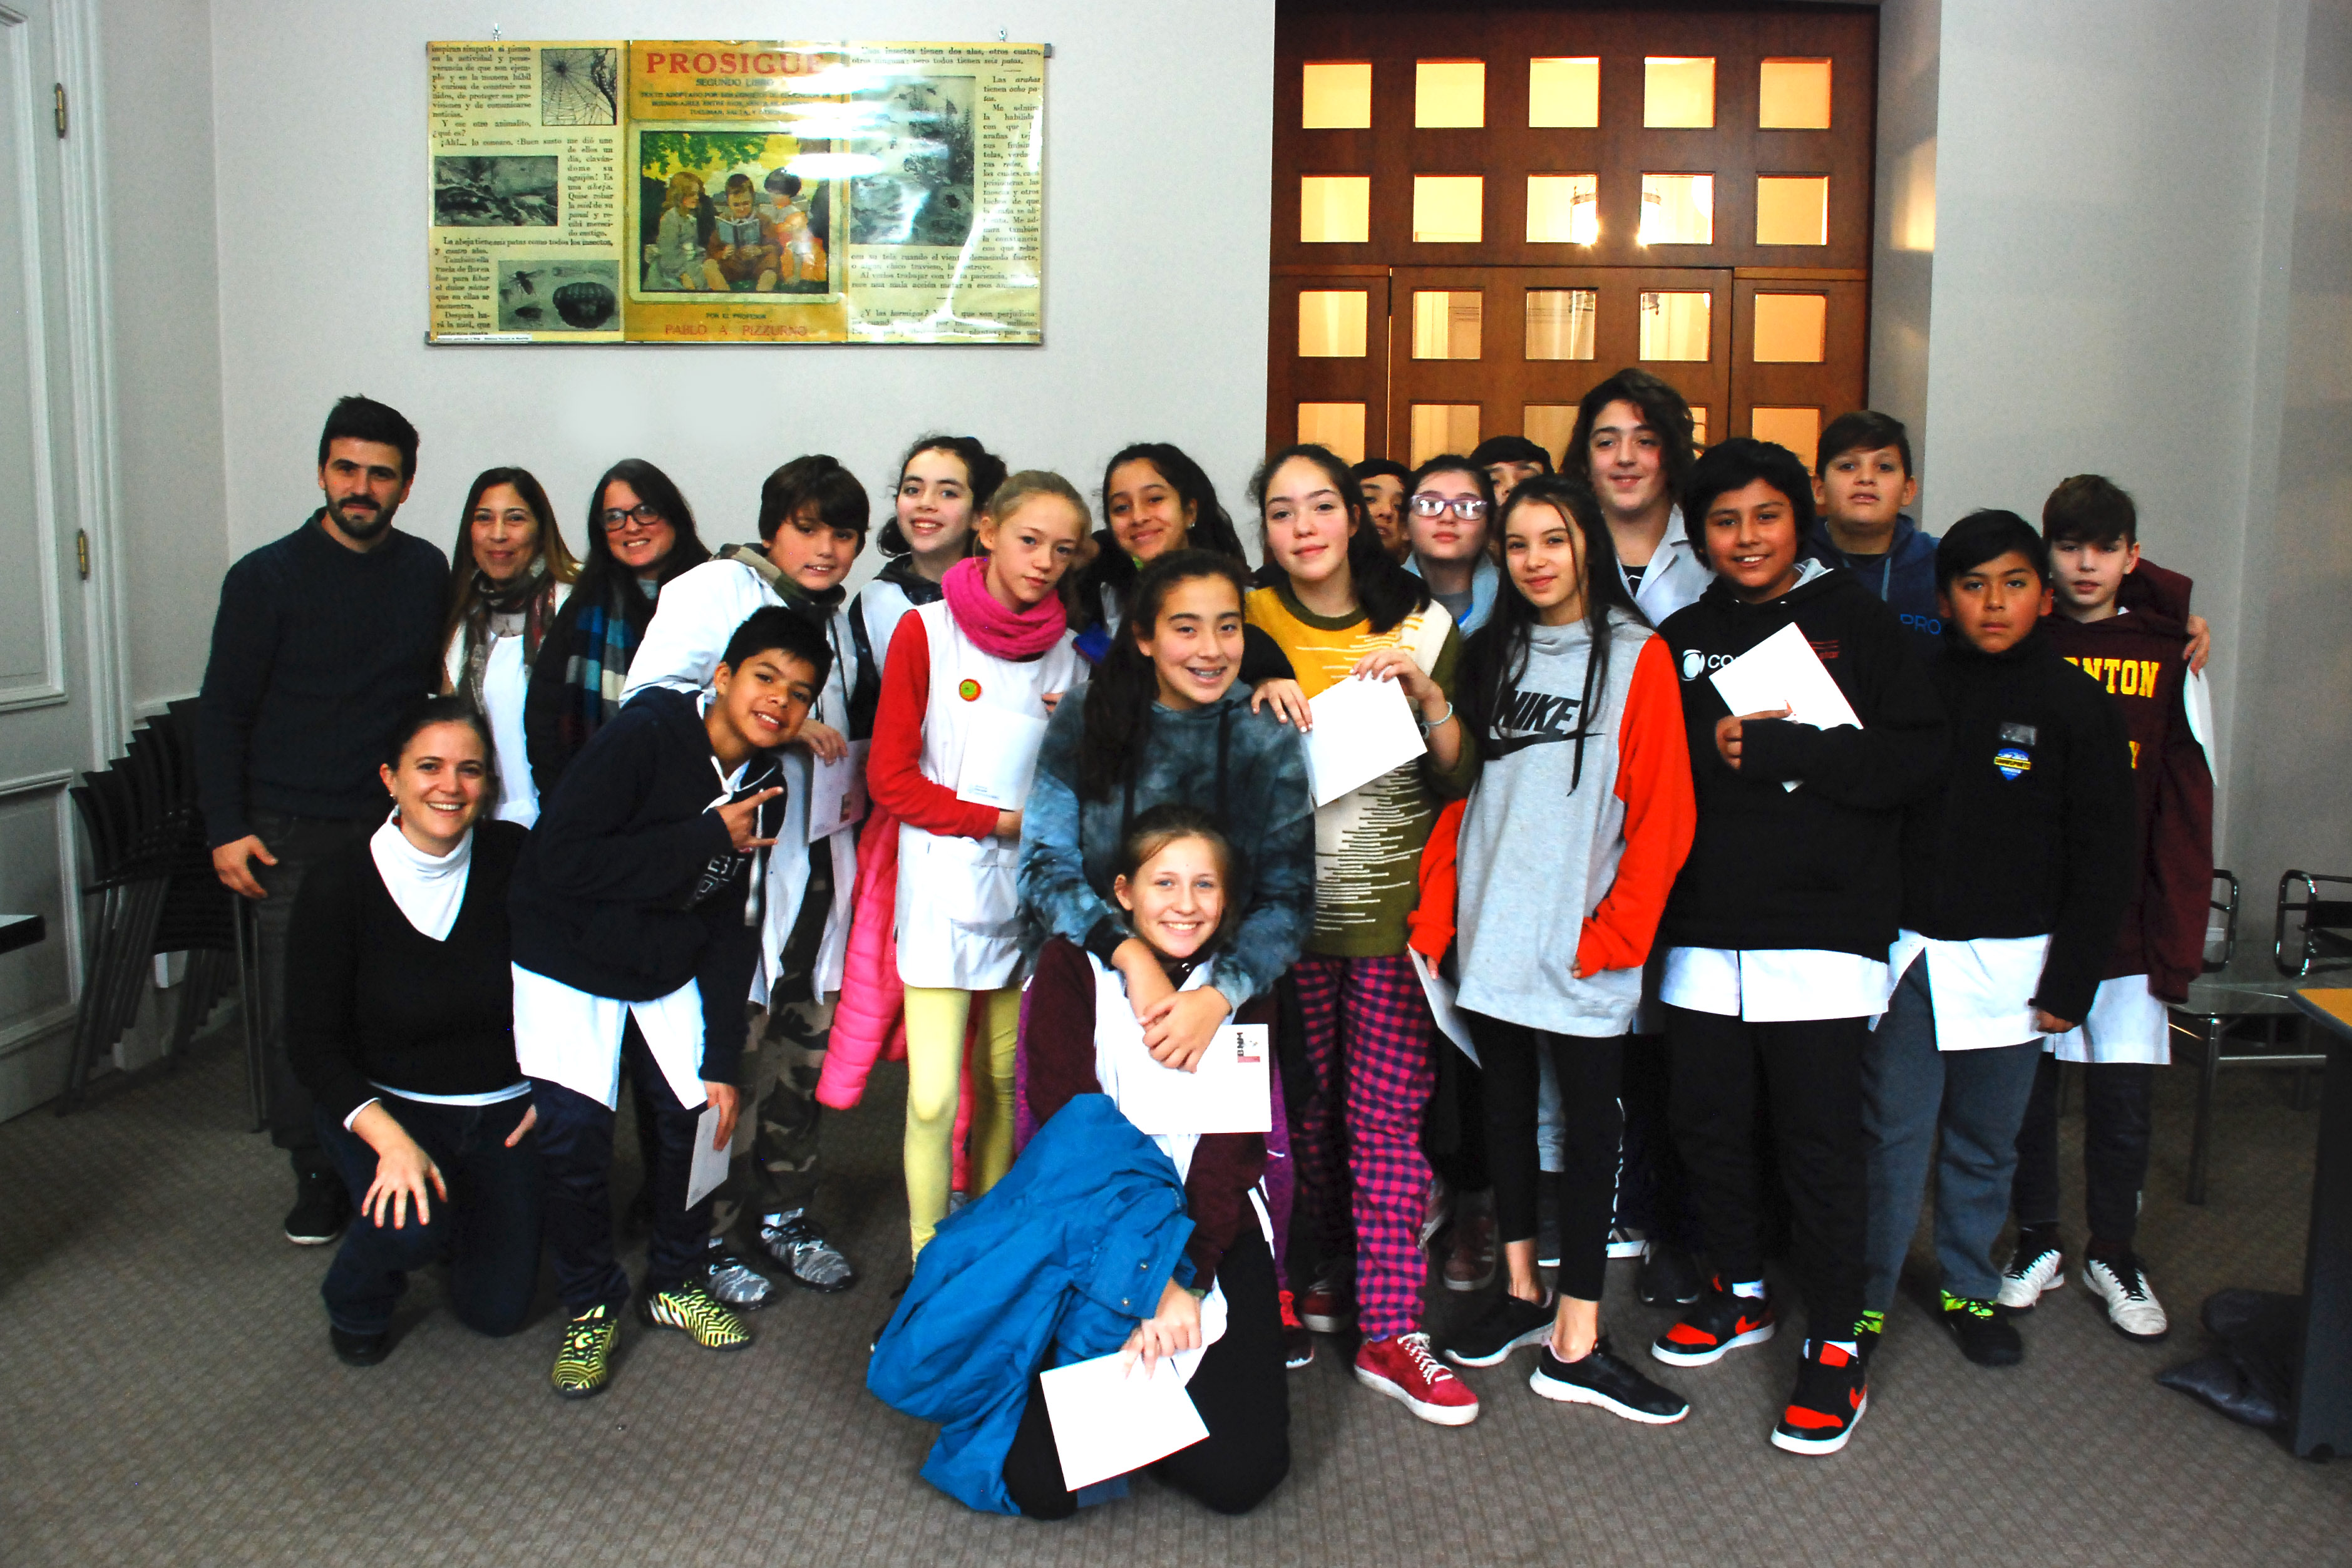 Alumnos y alumnas de séptimo grado de la Escuela Honorable Congreso de la Nación N.° 5 D.E. 9 de la Ciudad Autónoma de Buenos Aires